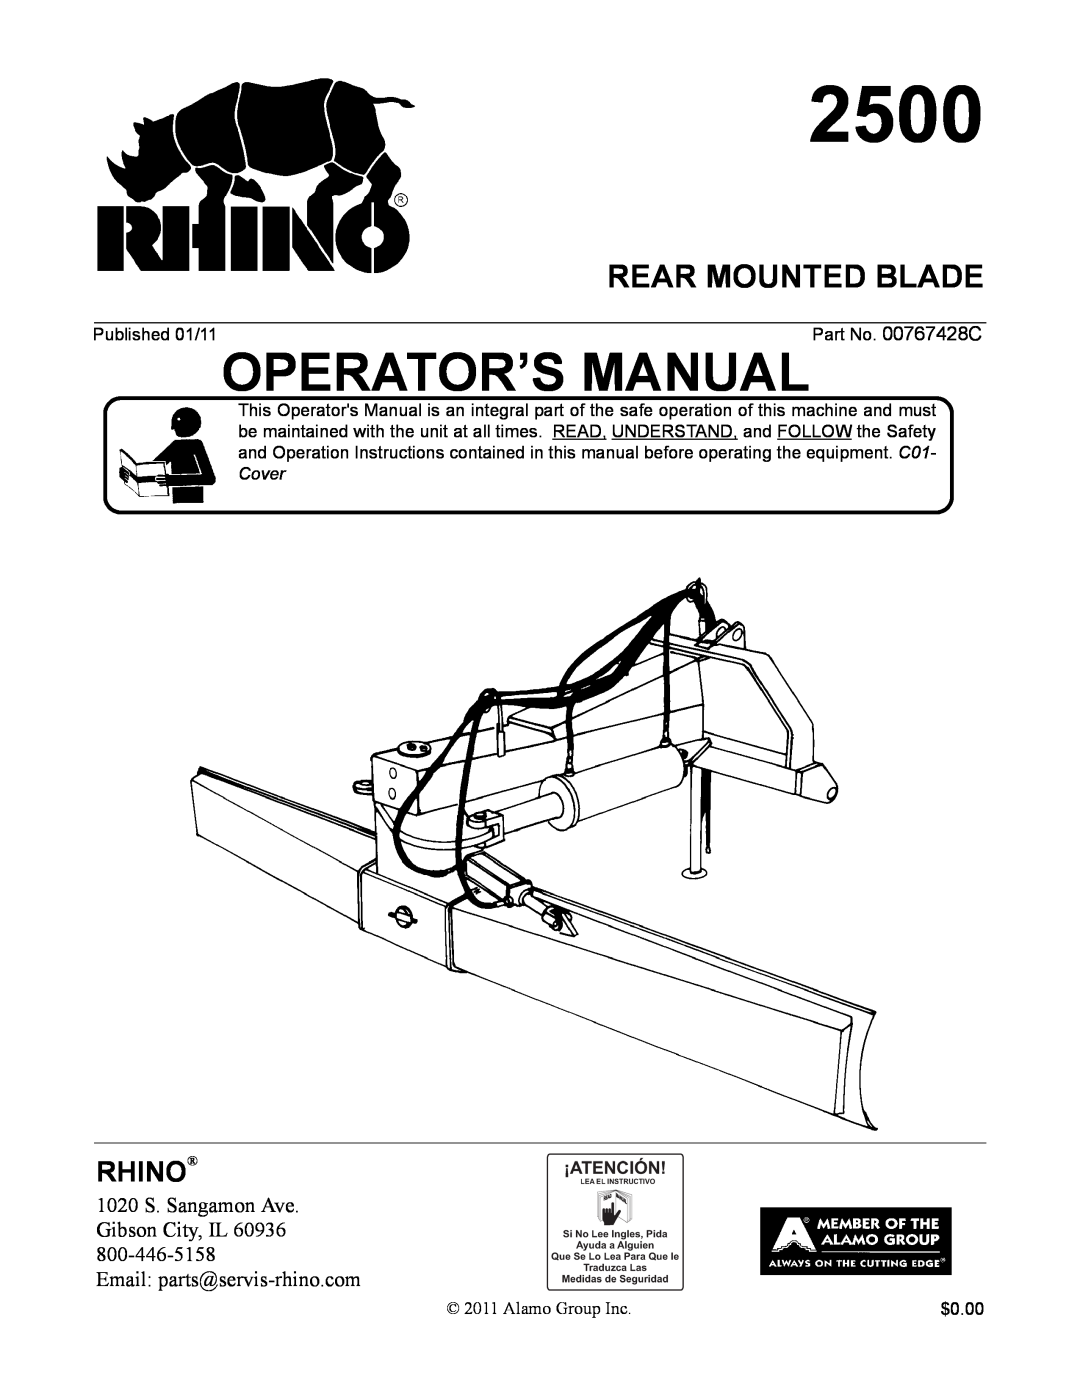 Alamo 2500 manual Rear Mounted Blade, Rhino 